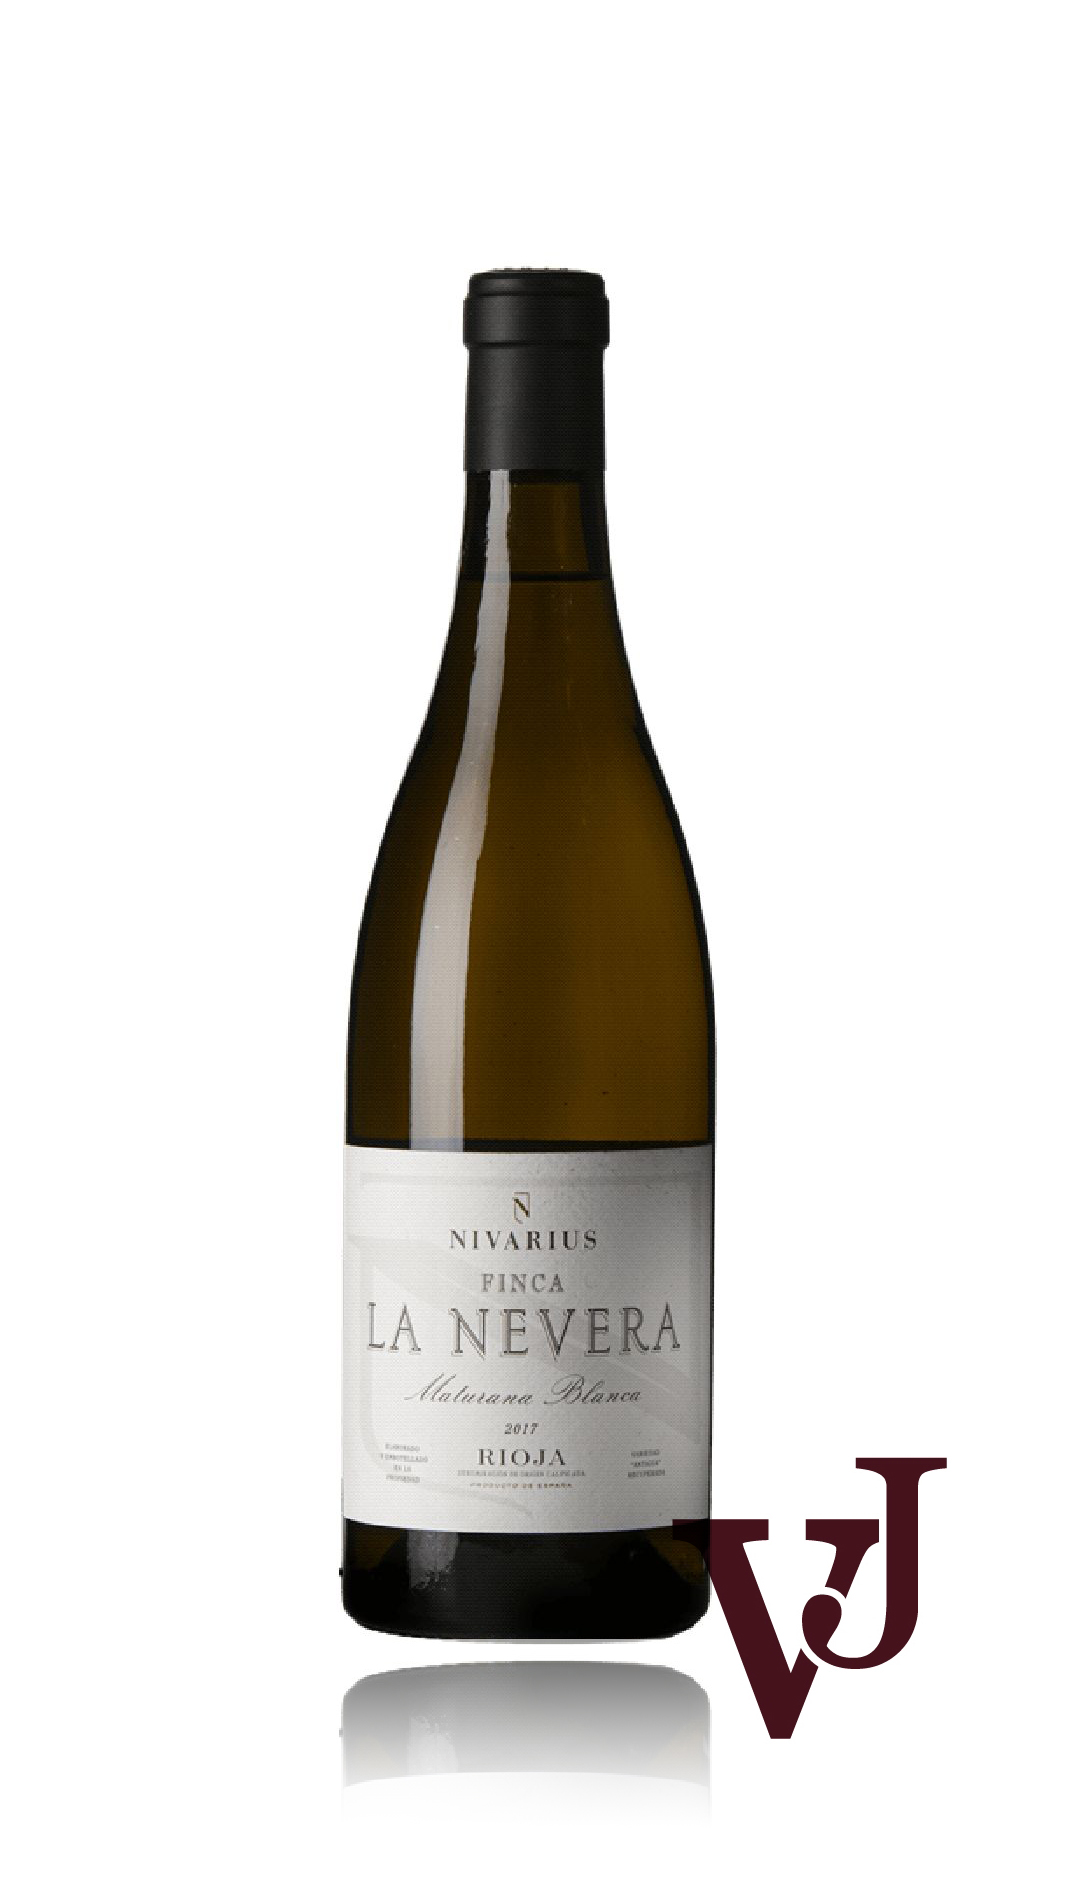 Vitt Vin - Finca La Nevera Maturana Blanca Nivarius 2017 artikel nummer 1304601 från producenten Bodegas Nivarius från området Spanien